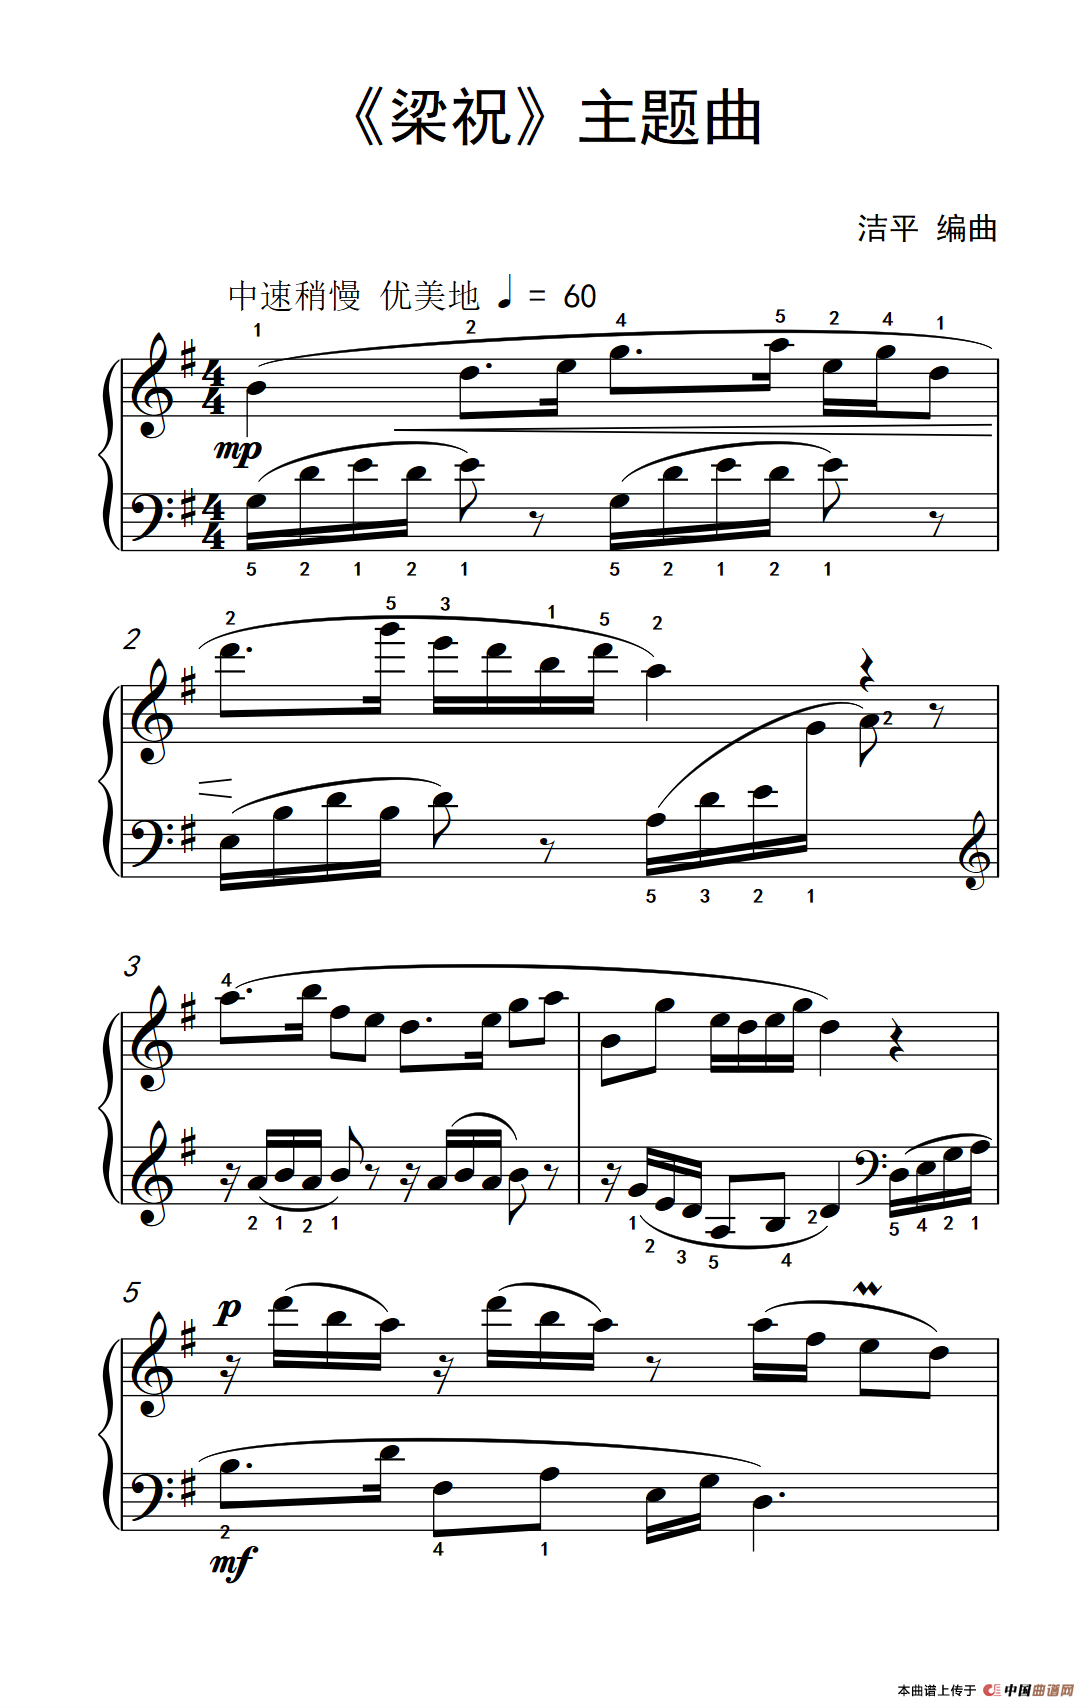 《梁祝》主题曲（约翰·汤普森 成人钢琴教程 第二册）(1)_原文件名：239_46_1.png